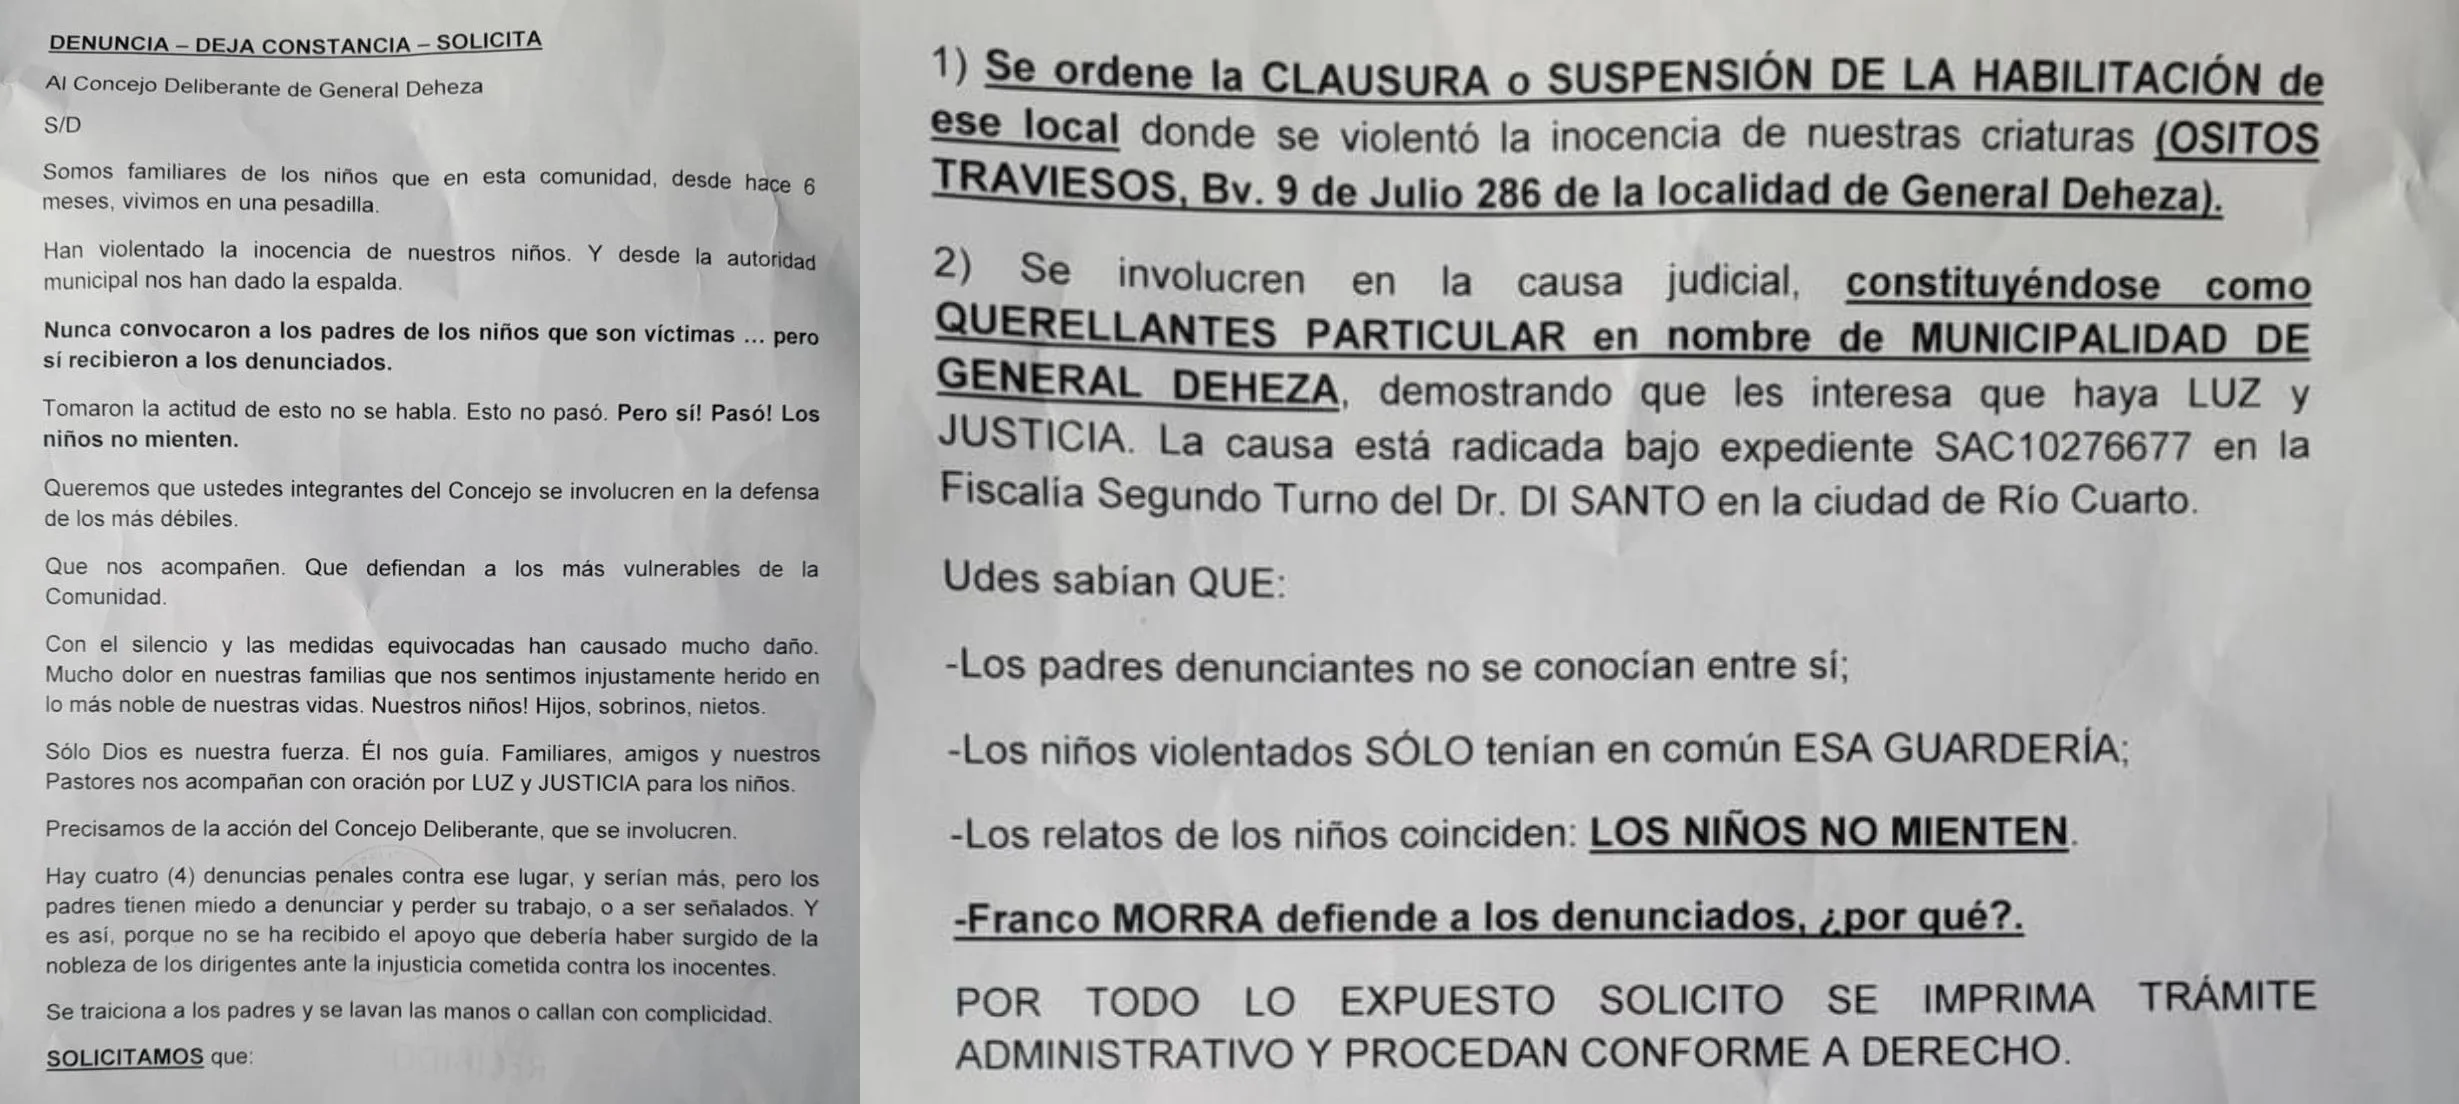 FAMILIARES EXIGEN EL CIERRE DEL JARDIN MATERNAL DENUNCIADO EN GENERAL DEHEZA